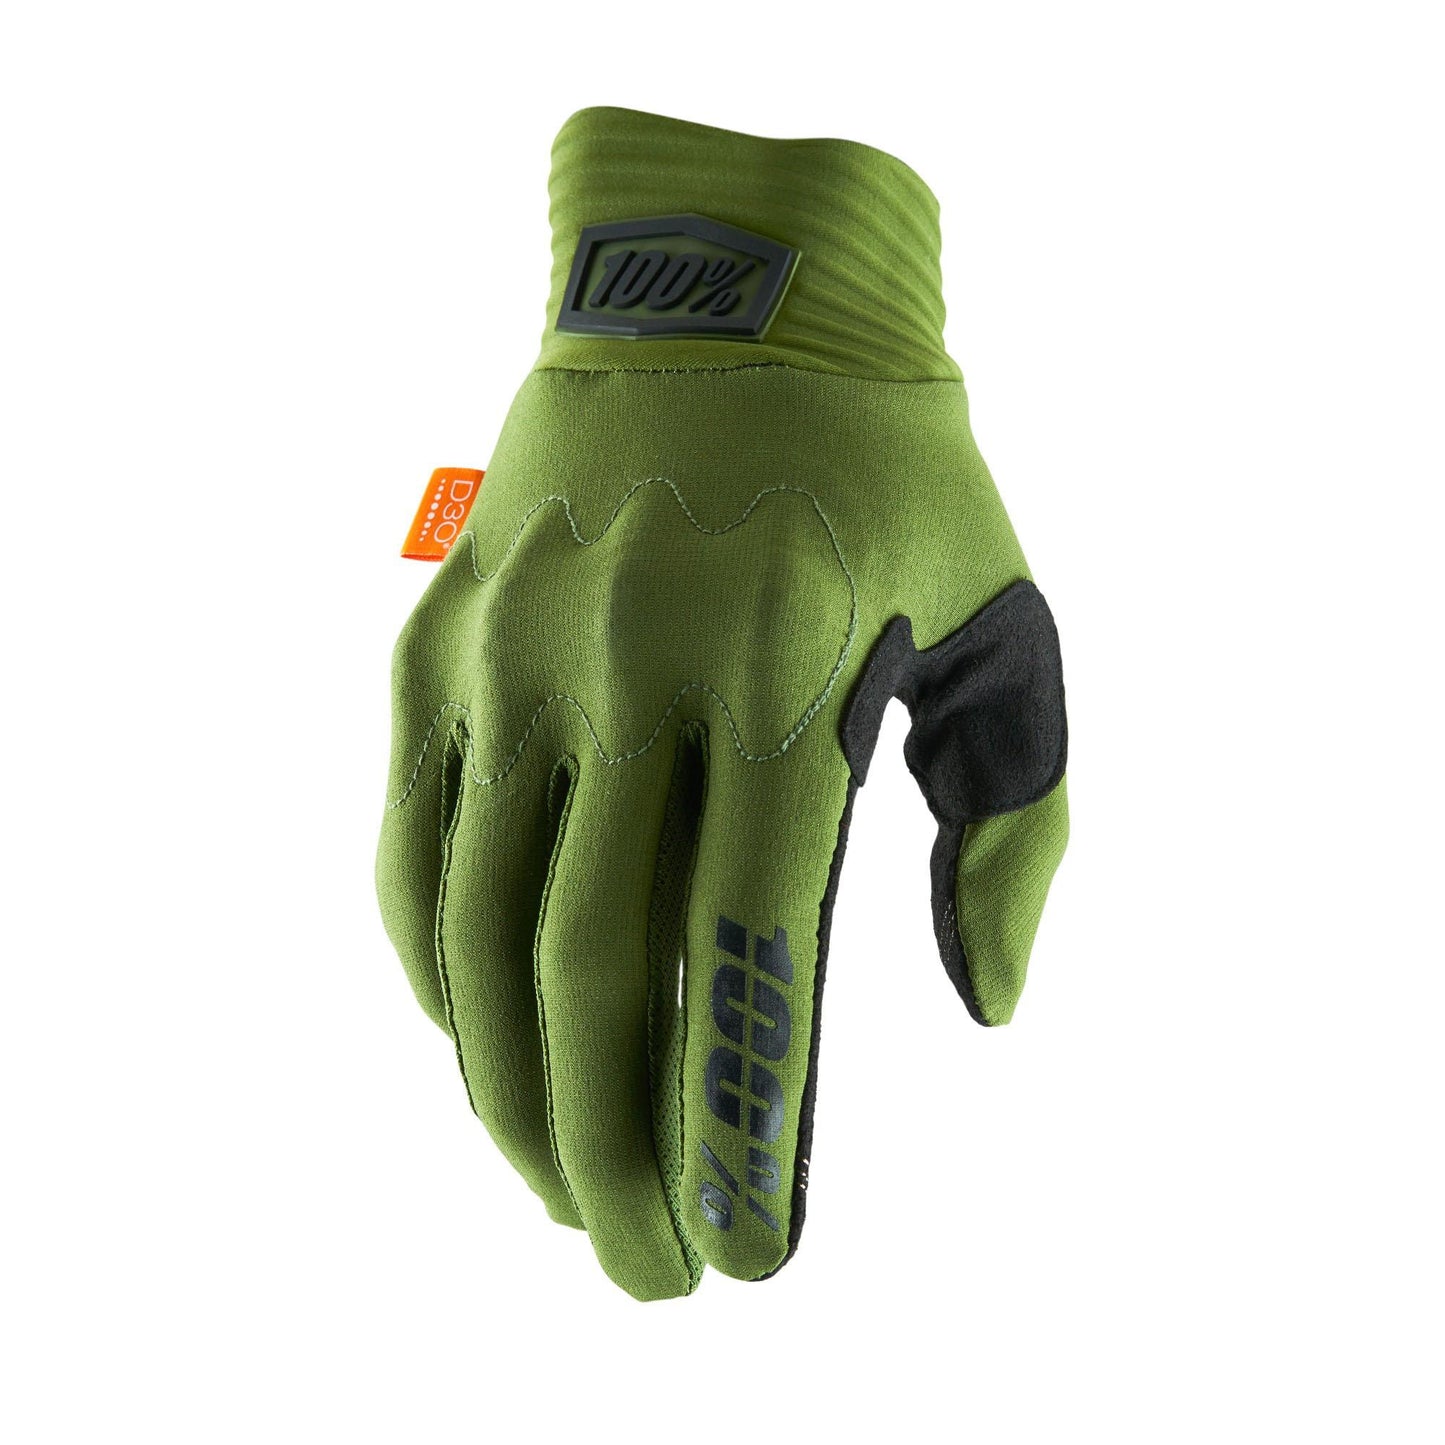 100% Cognito D30 Glove Army Green / Black